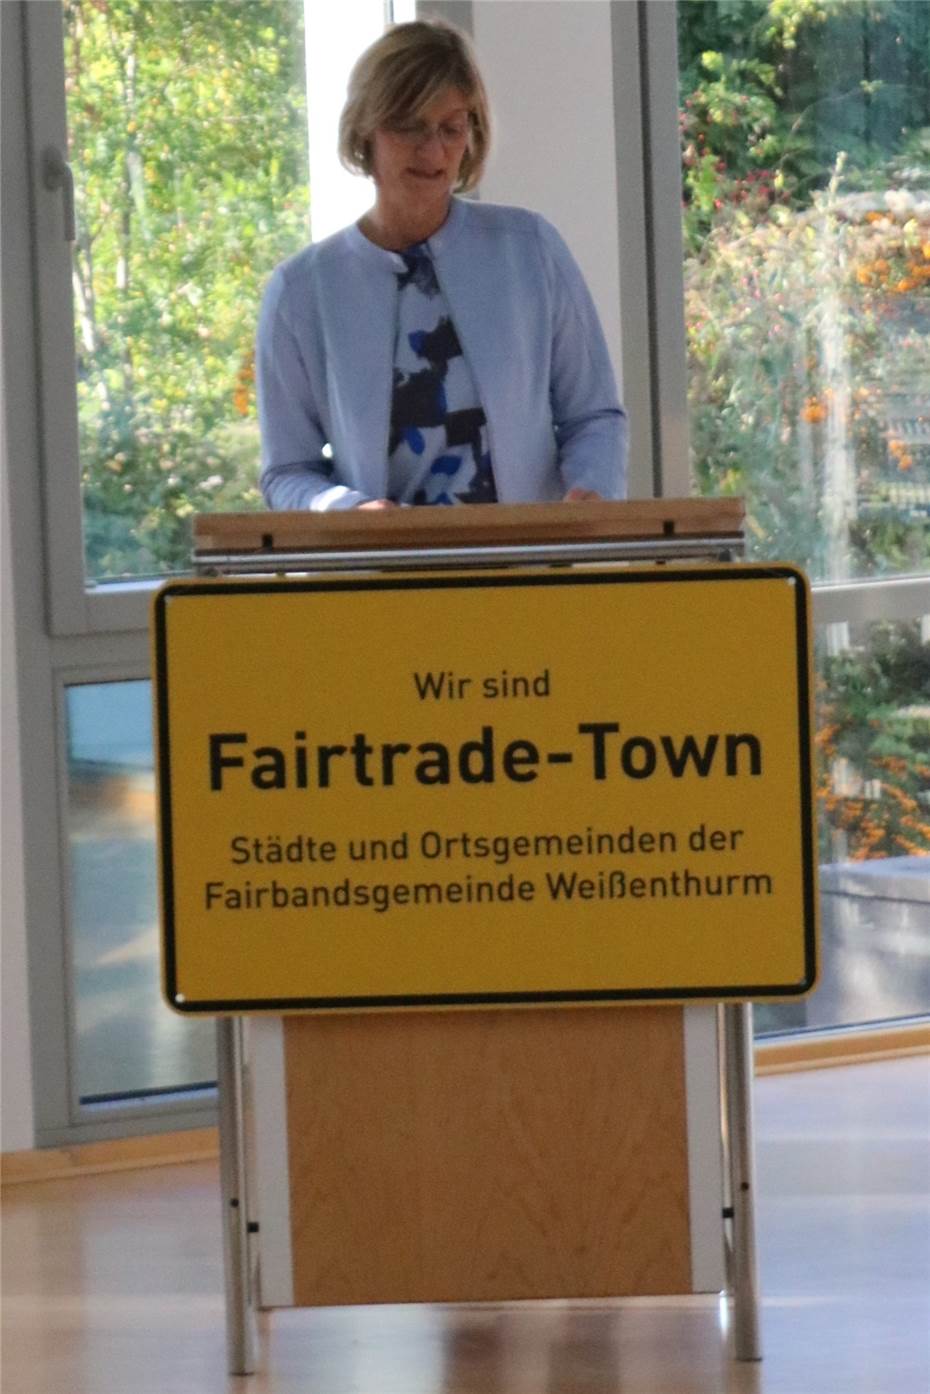 Ehrenbotschafter Manfred Holz
überreicht die Zertifizierungsurkunde